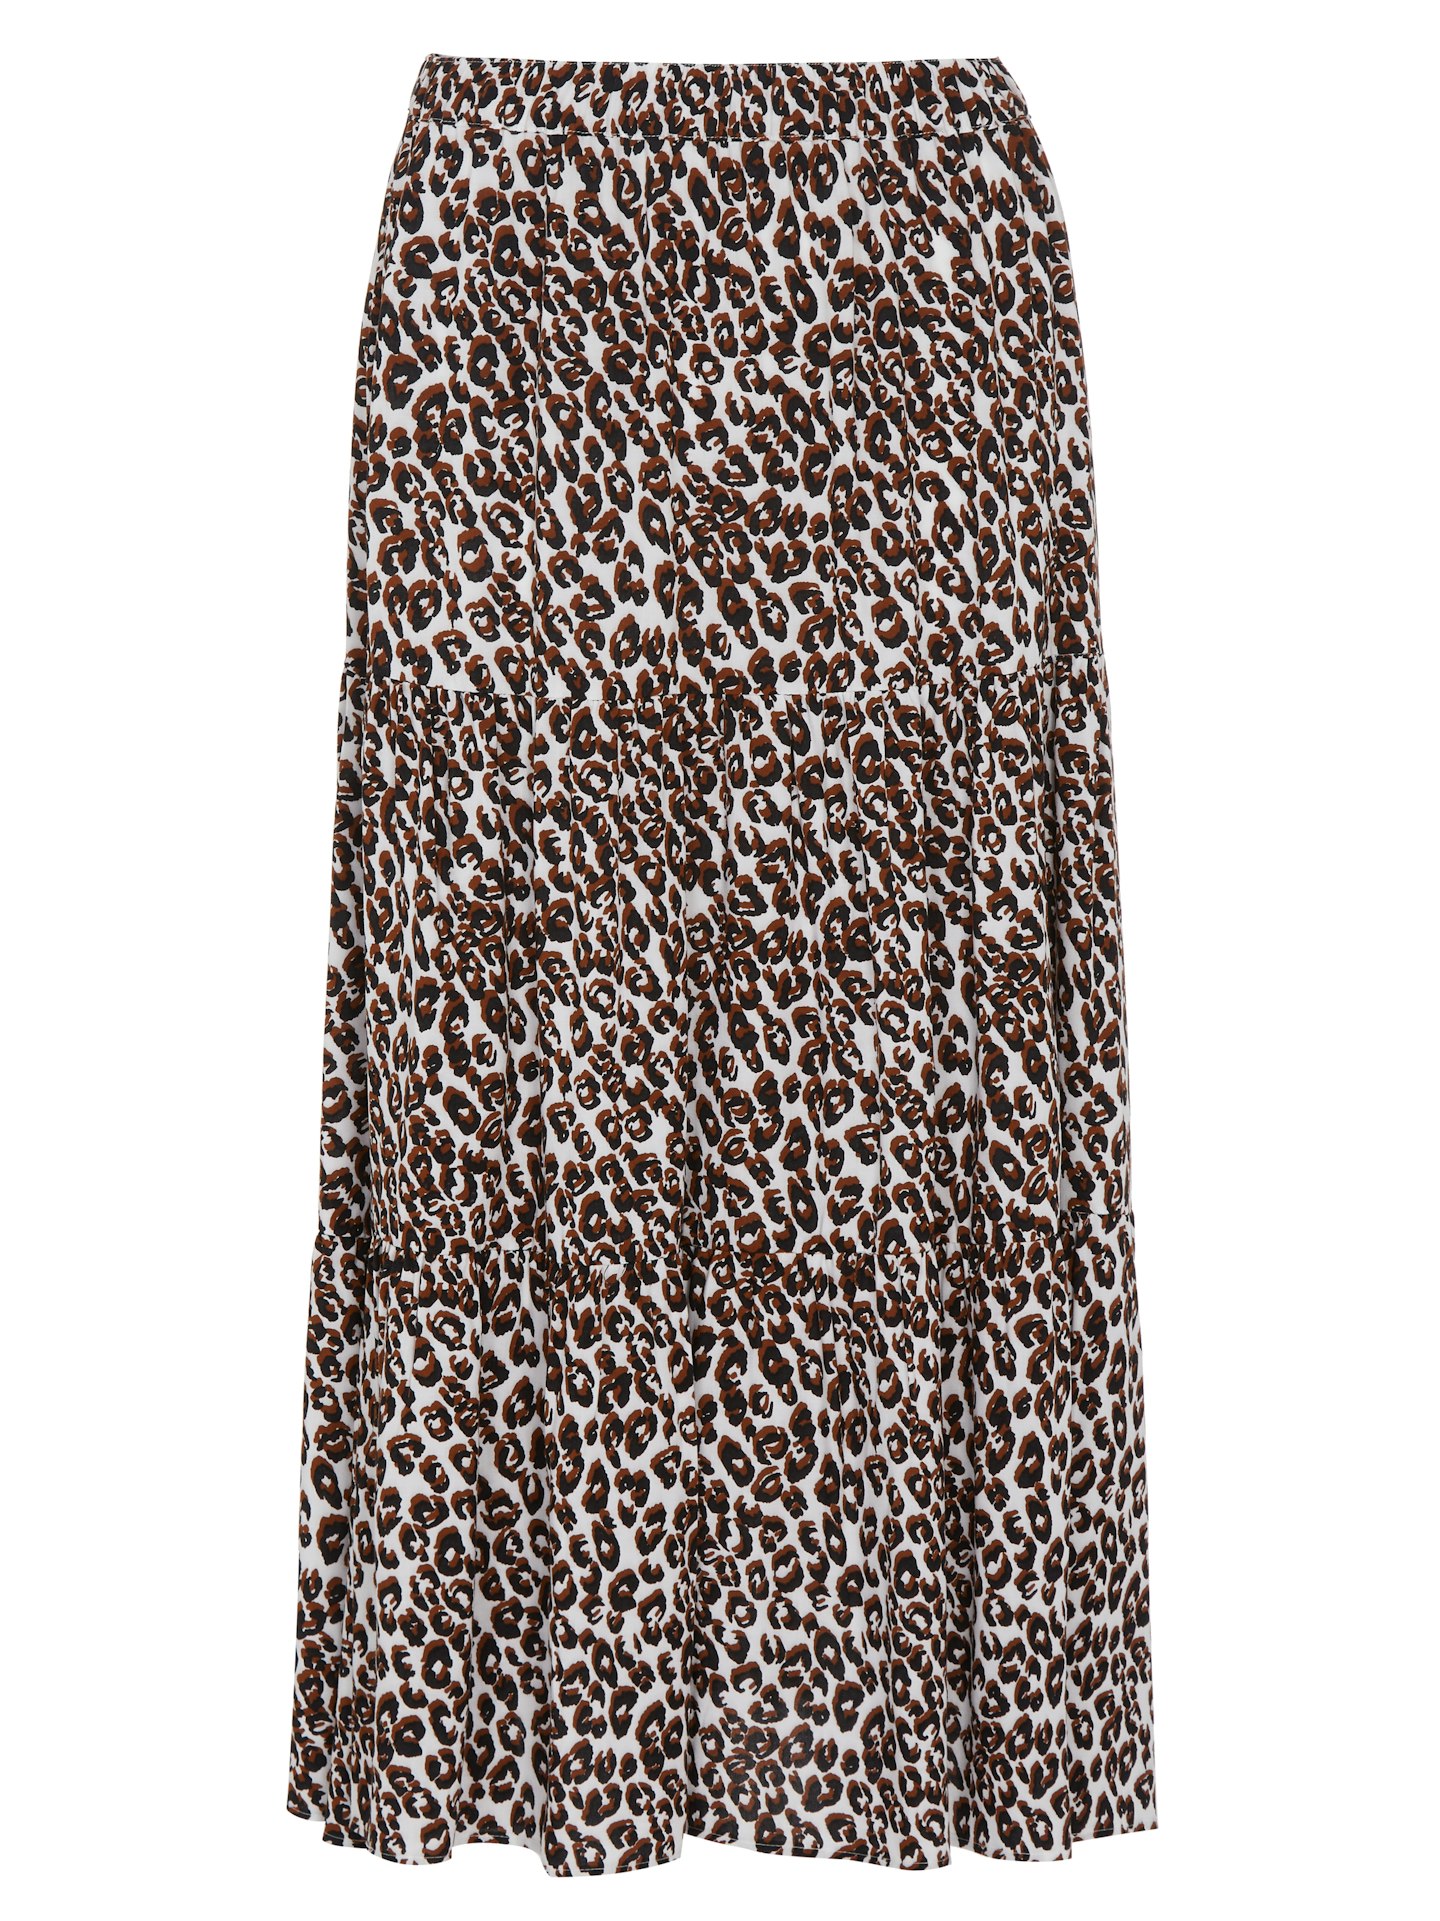 Finery London, Leopard Print Midi Tiered Skirt, £39